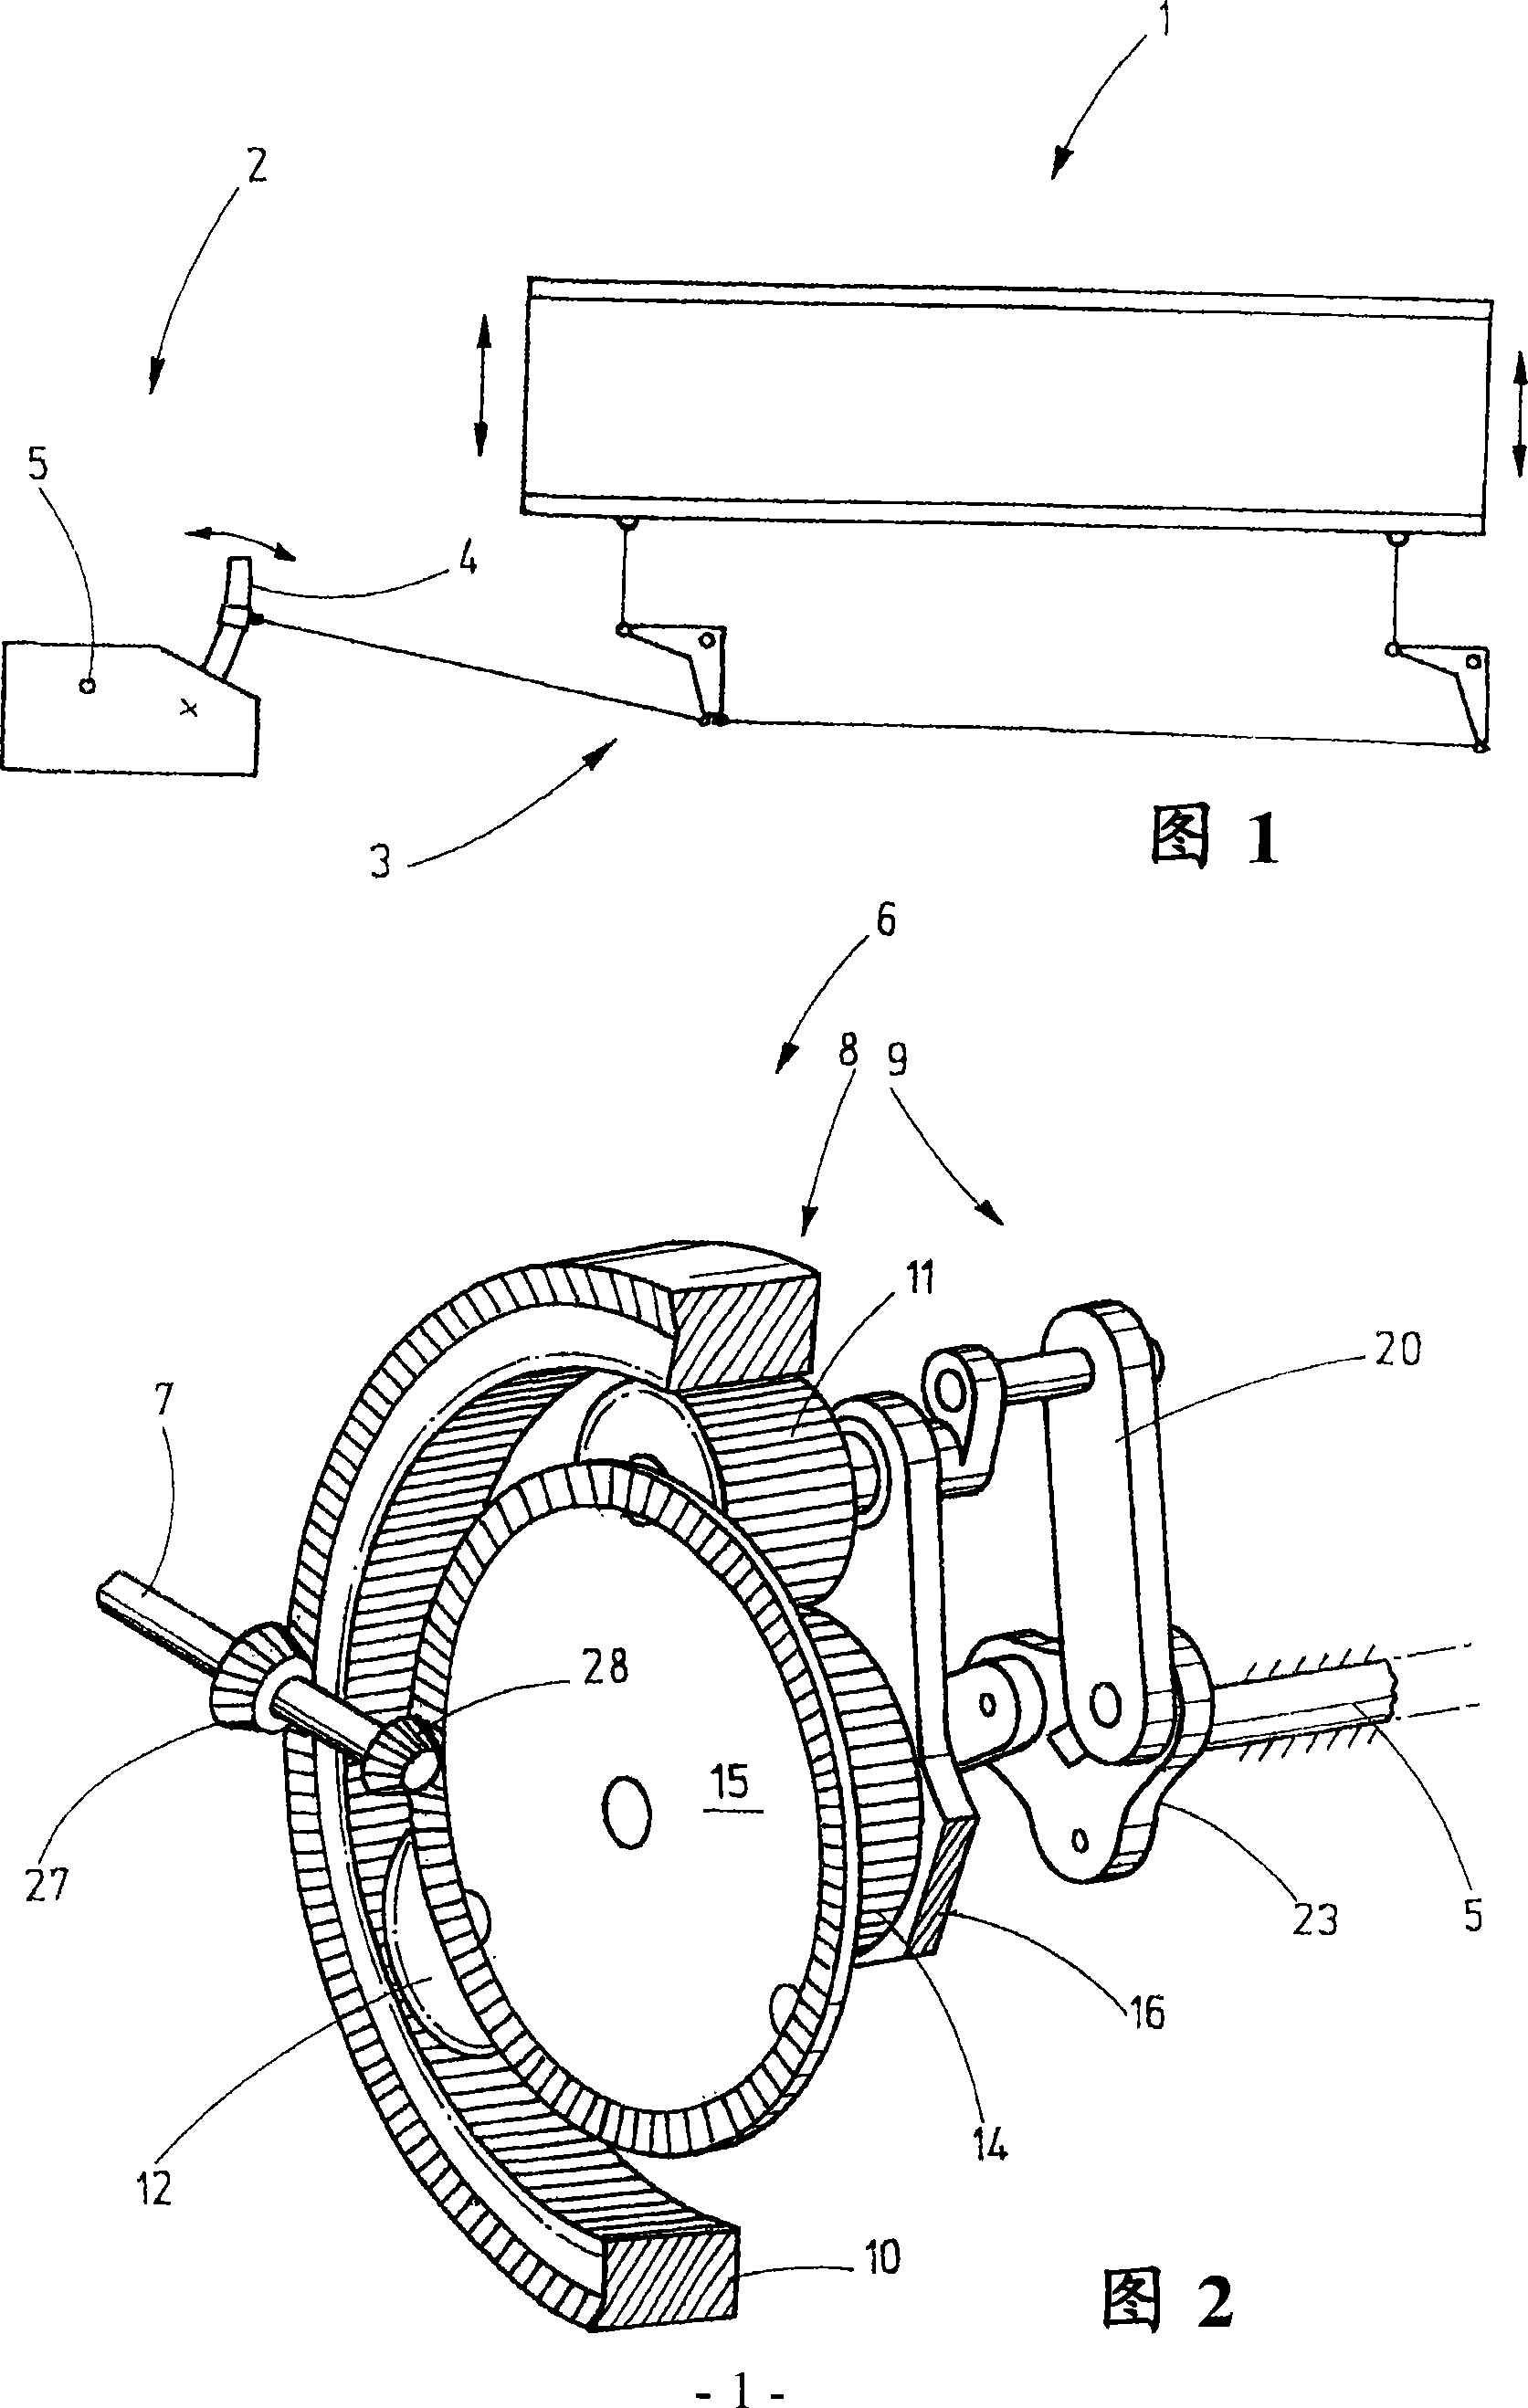 Gear mechanism for a heald shaft drive